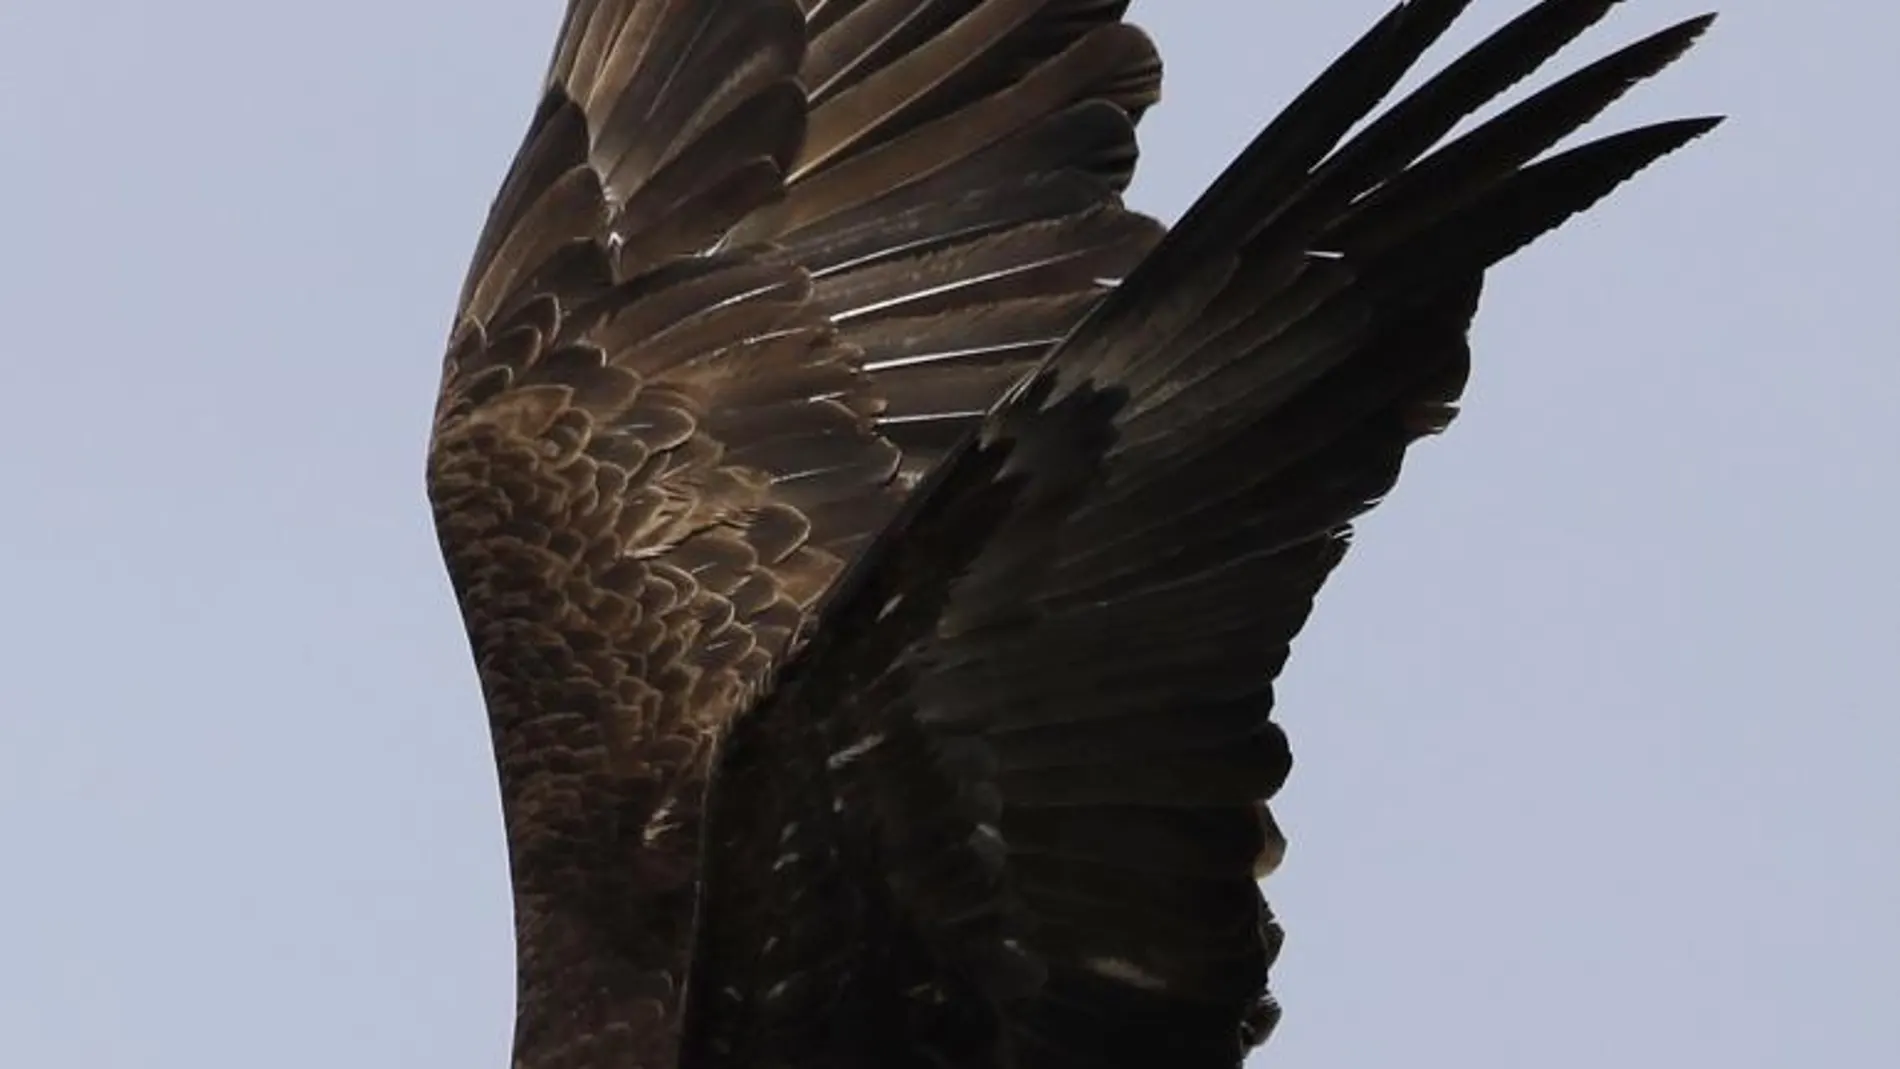 Un ejemplar de águila calva, una de las especies utilizadas en terapias